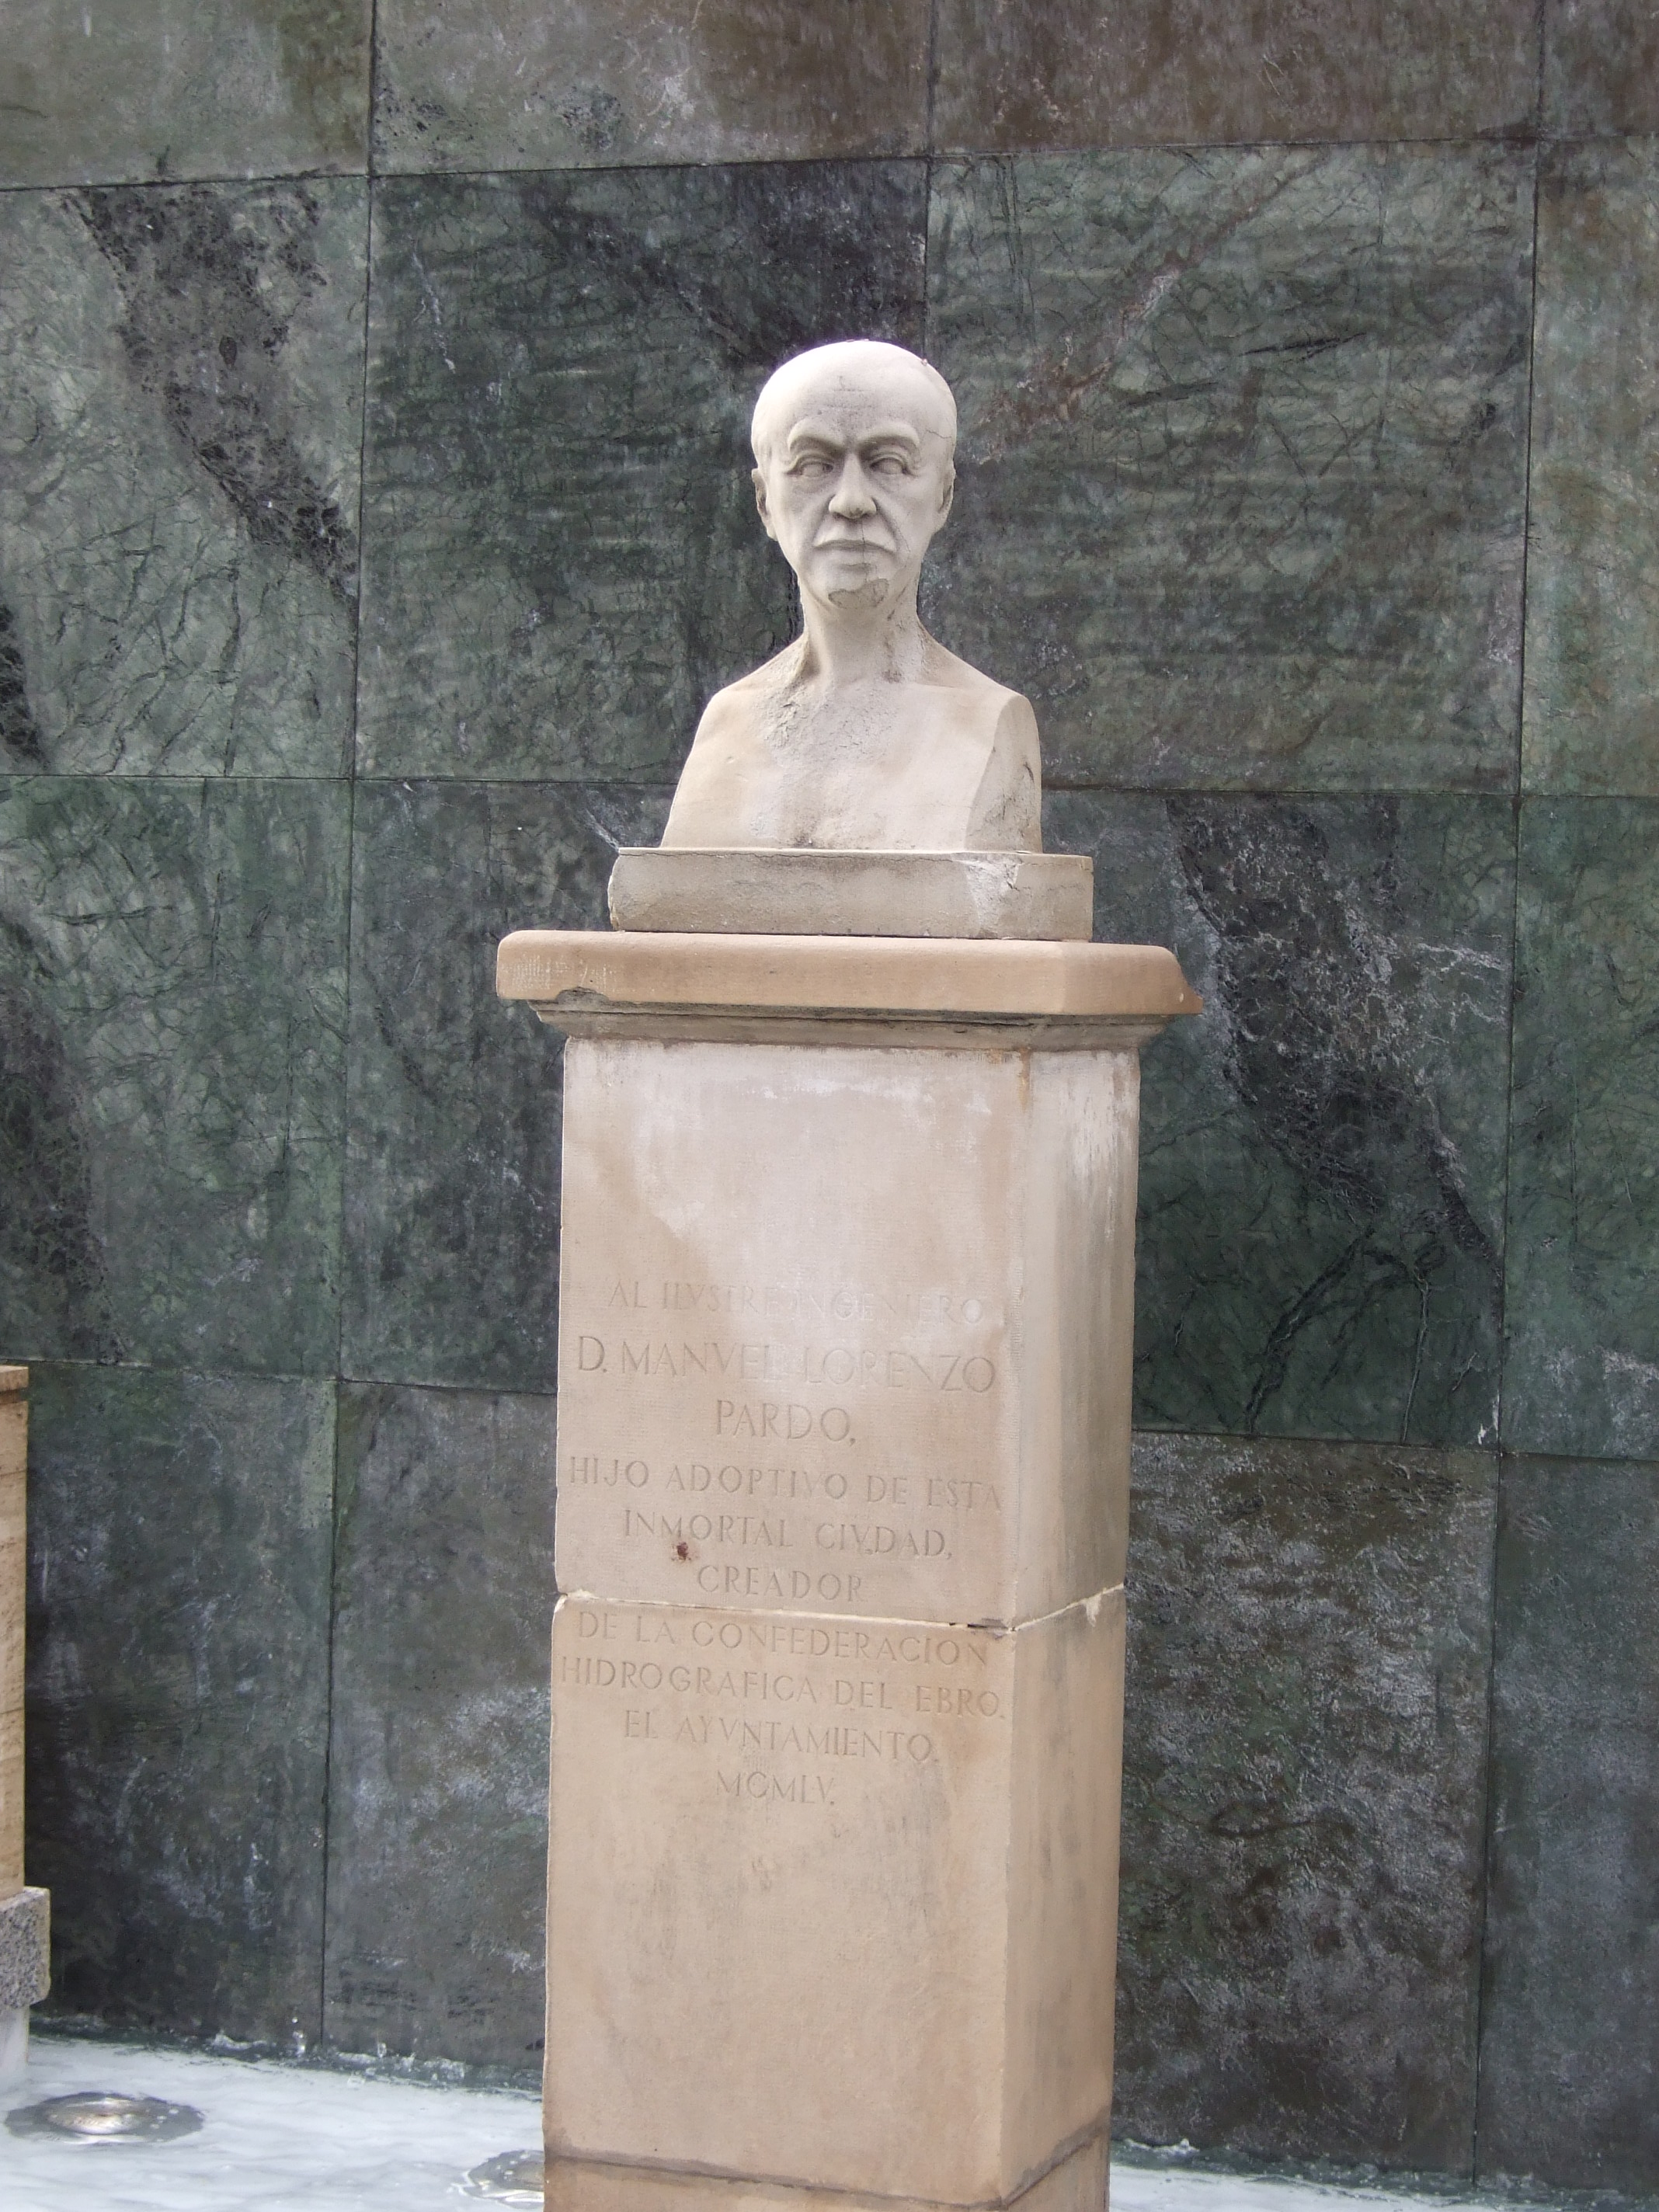 Busto de Manuel Lorenzo Pardo en [[Zaragoza